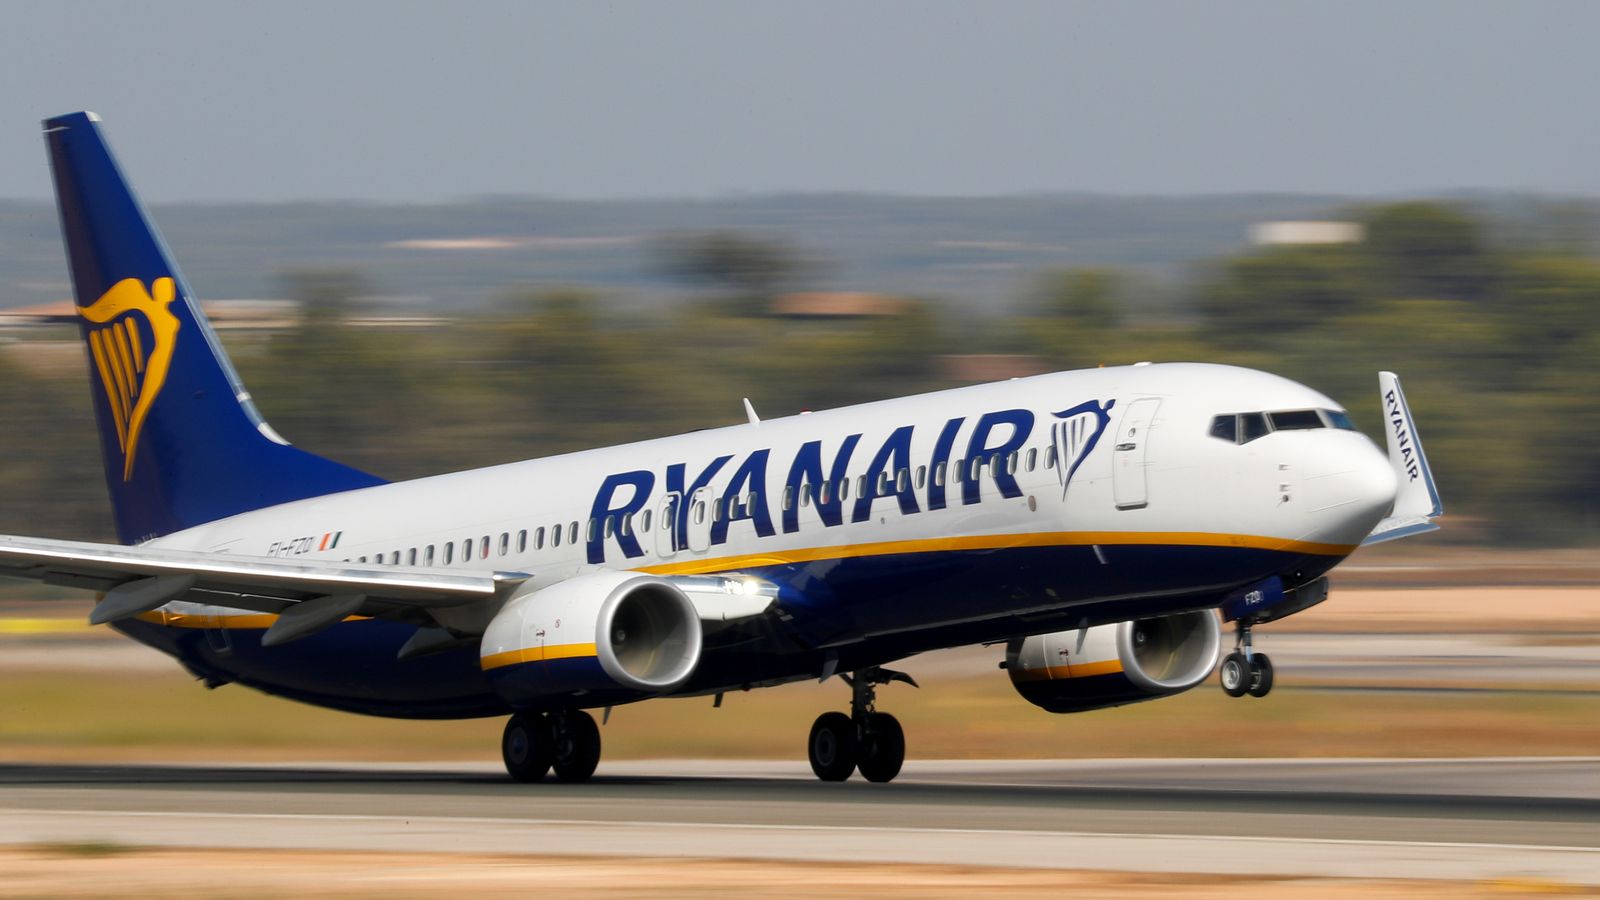 Ισπανία: Οι απεργιακές κινητοποιήσεις στην Ryanair παρατείνονται ως τις αρχές Ιανουαρίου